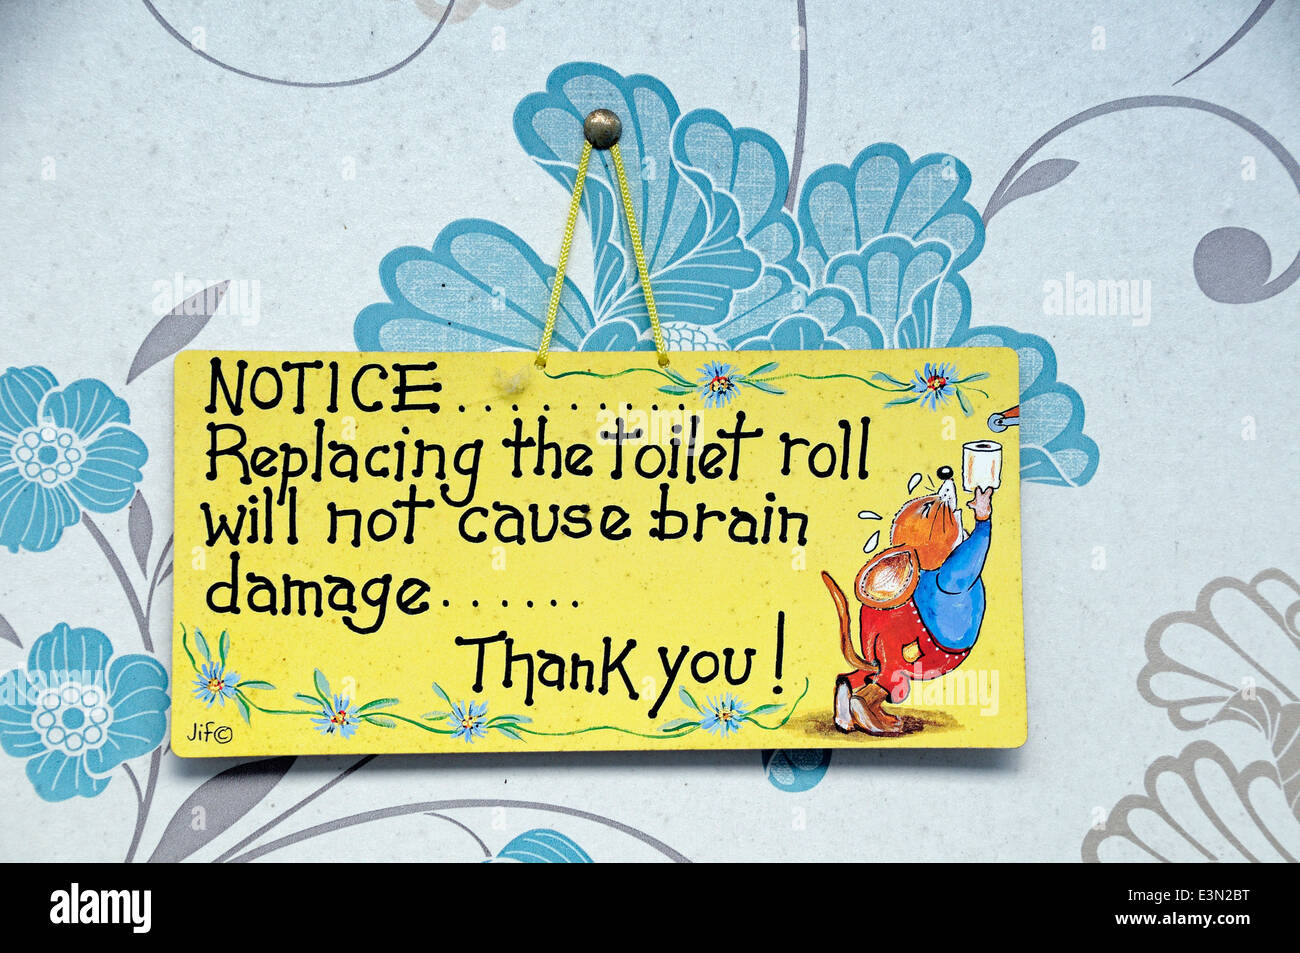 Zeichen innen Toilette sagen ersetzen die Toilettenpapierrolle verursacht keine Schädigung des Gehirns Stockfoto